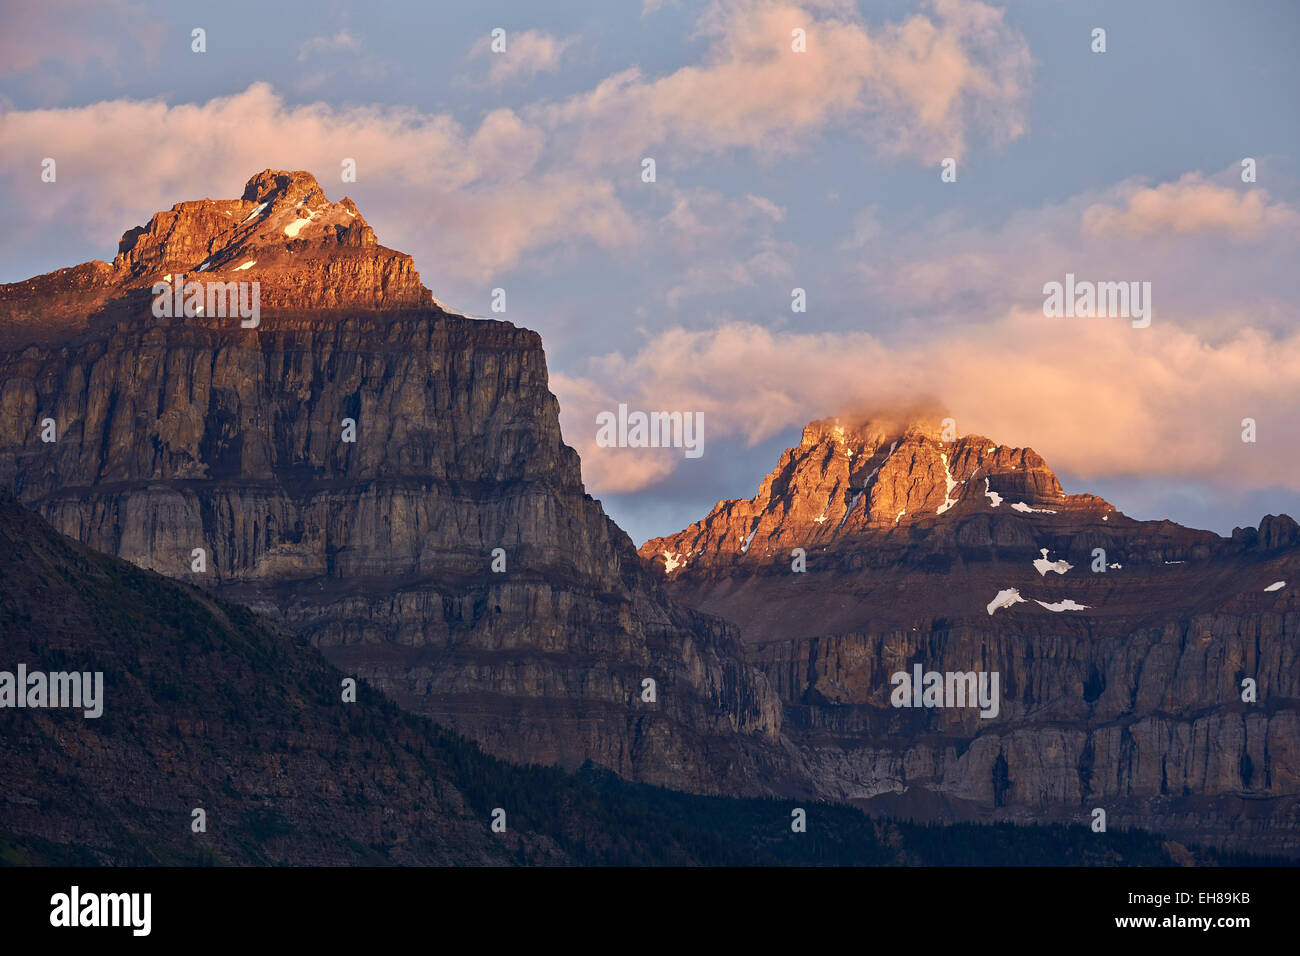 Début de la lumière sur les crêtes escarpées, Banff National Park, site du patrimoine mondial de l'UNESCO, de l'Alberta, des montagnes Rocheuses, au Canada, en Amérique du Nord Banque D'Images